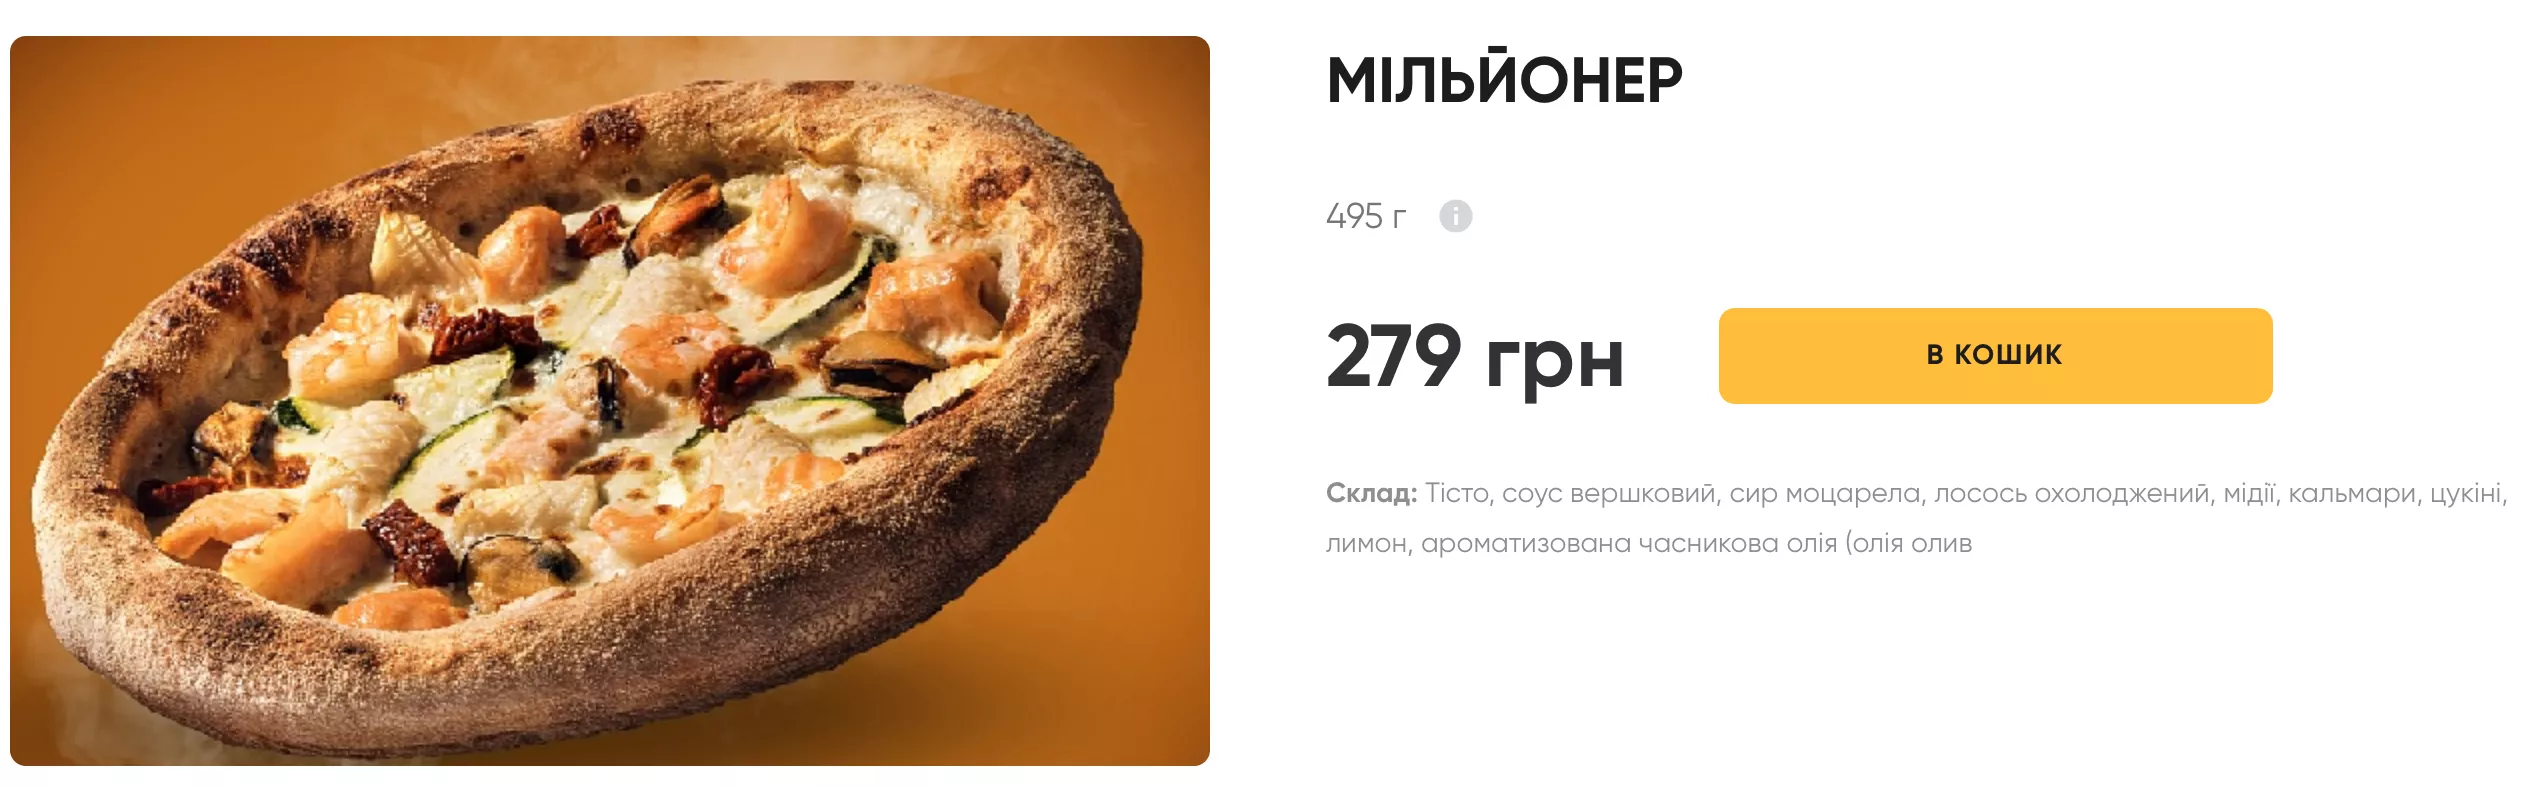 Пицца "Миллионер" за 179 гривен